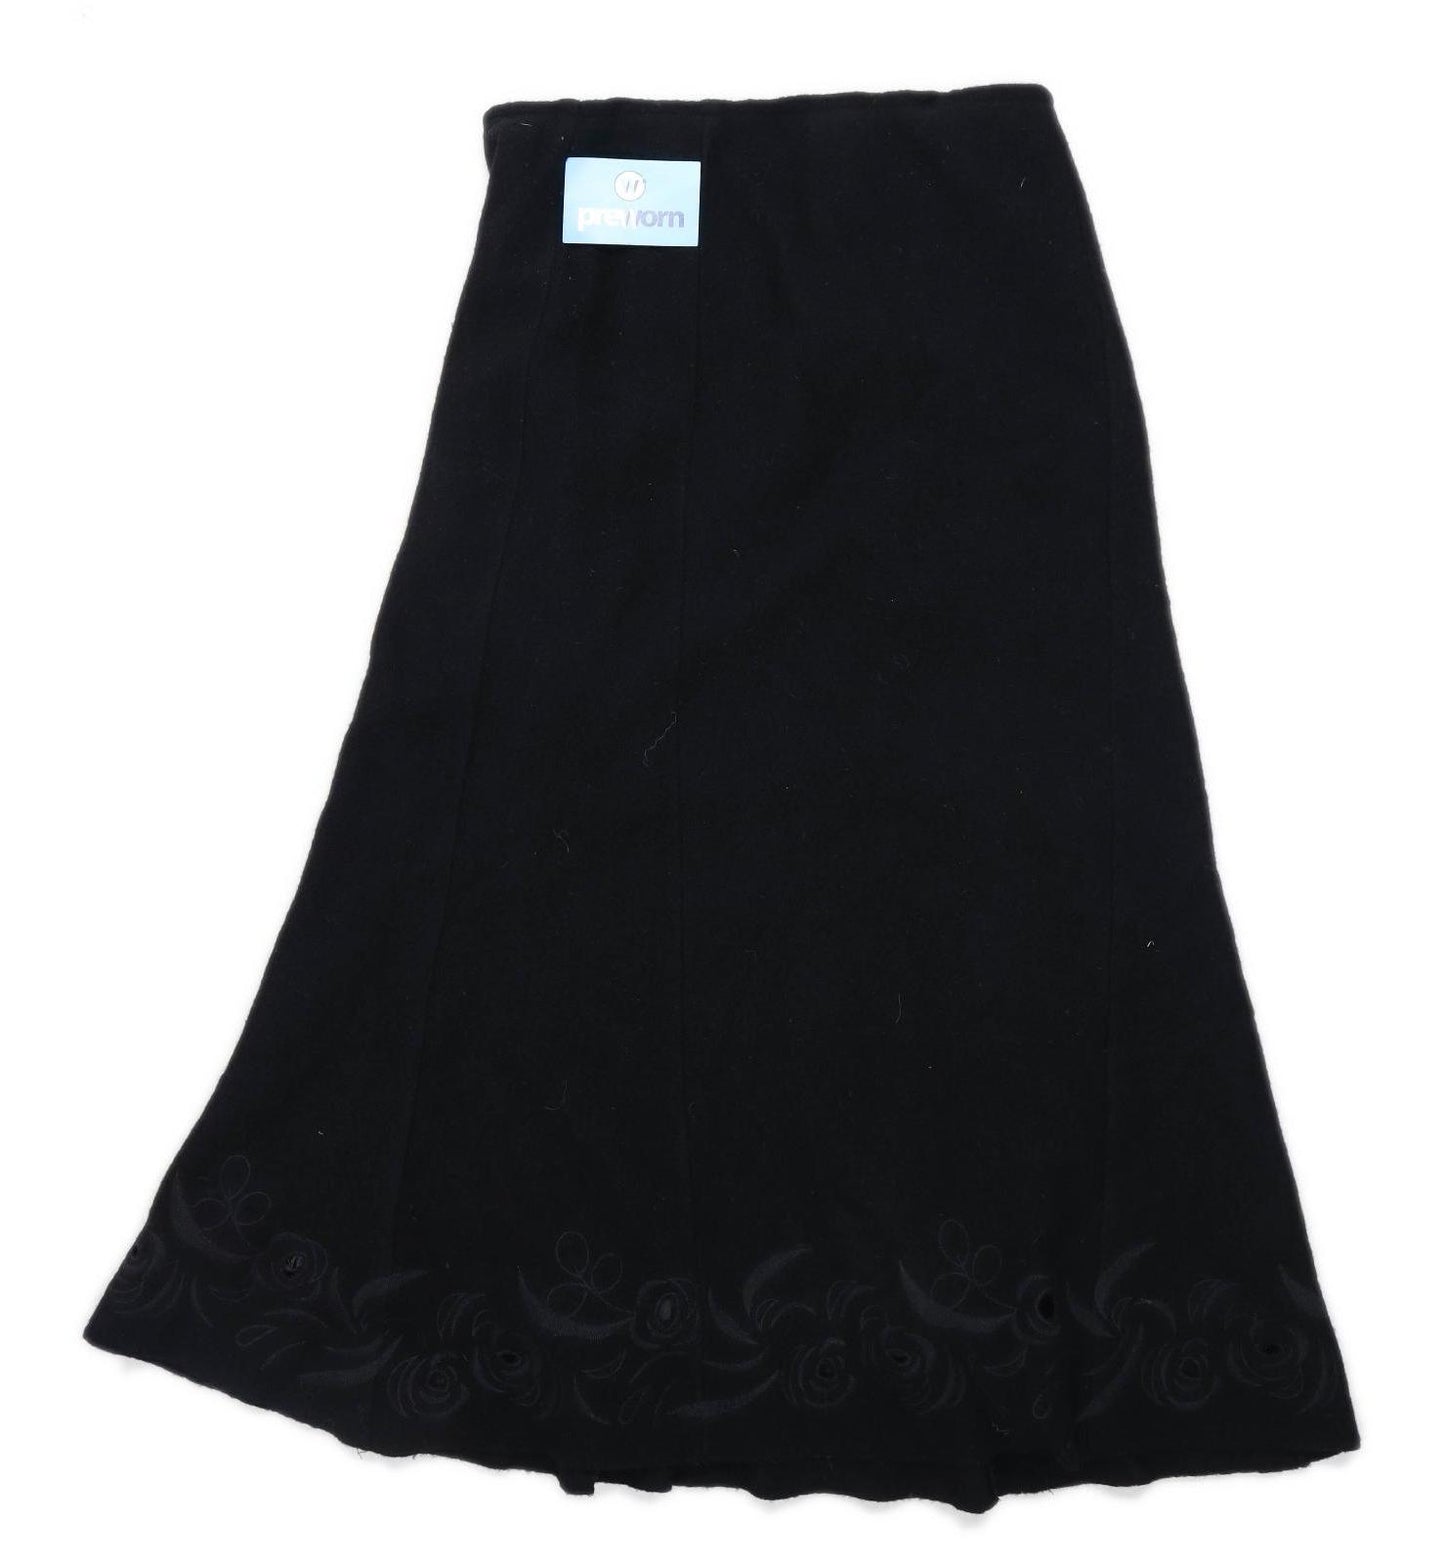 Alex & Co Womens Size 10 Wool Blend Black Skirt (Regular)